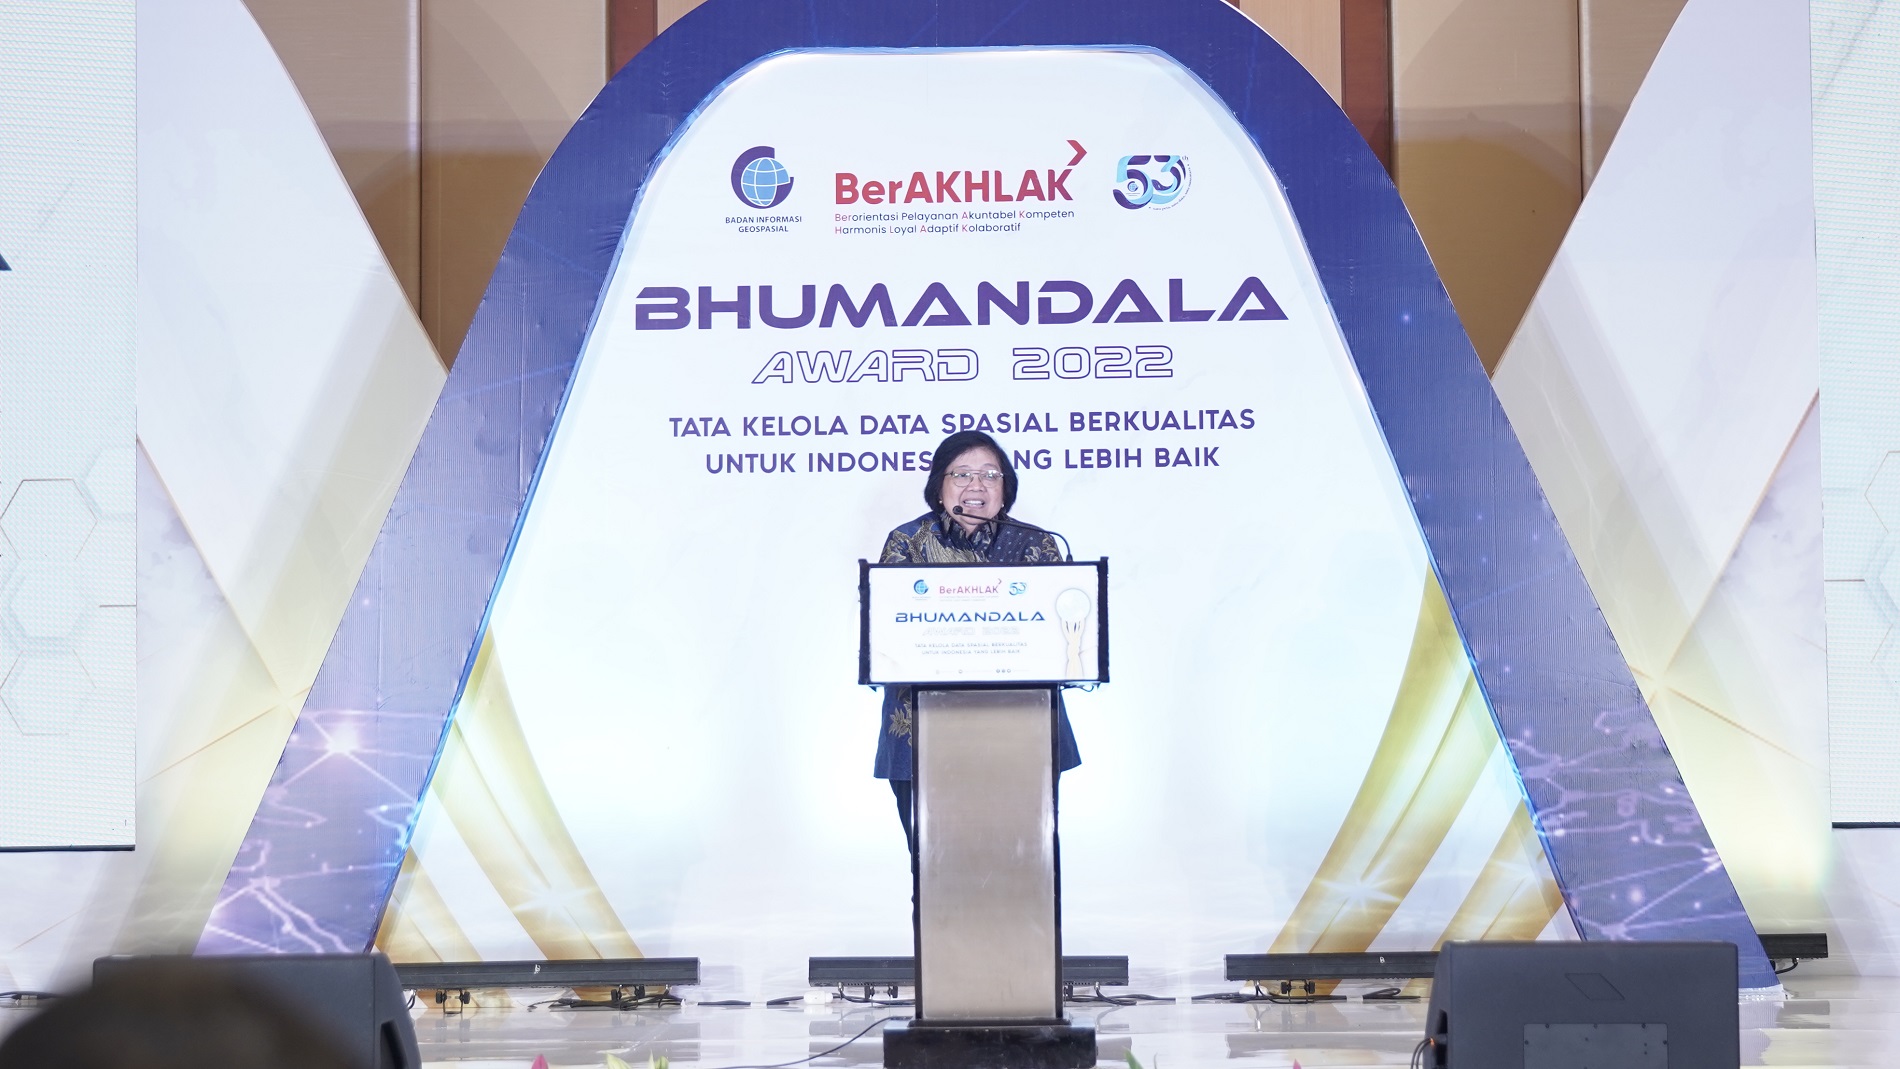 Speech dari Menteri Lingkungan Hidup dan Kehutanan - Siti Nurbaya Bakar